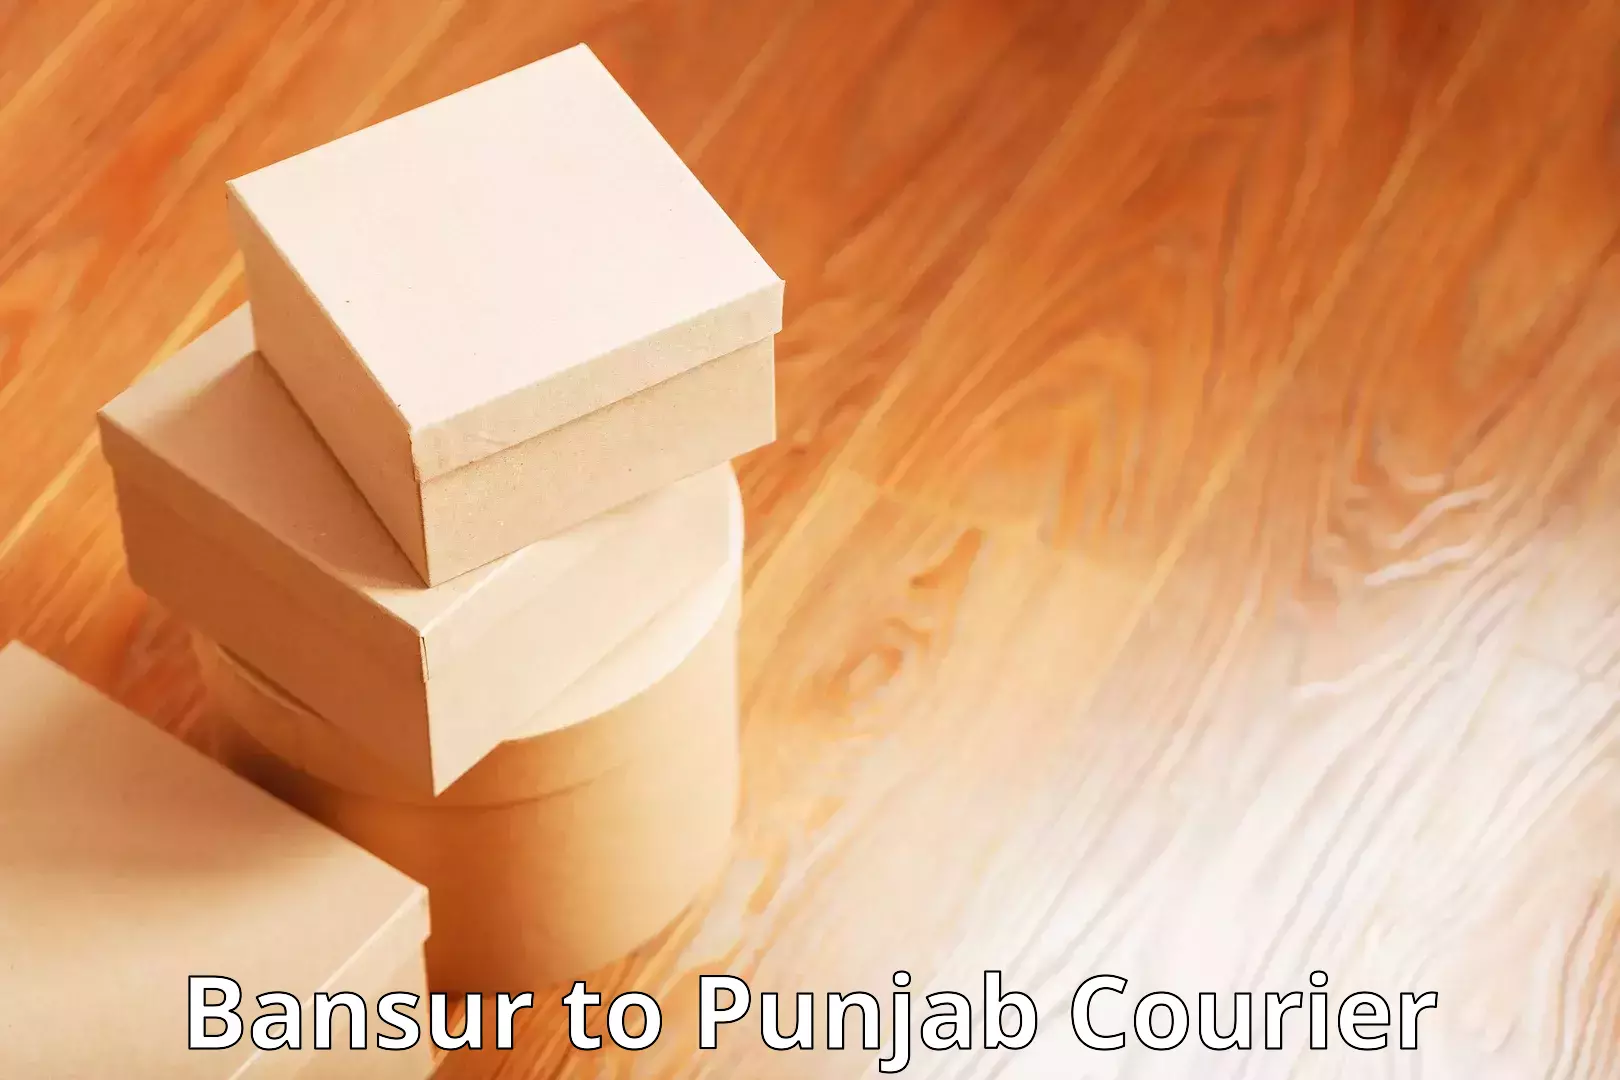 Efficient courier operations Bansur to Punjab